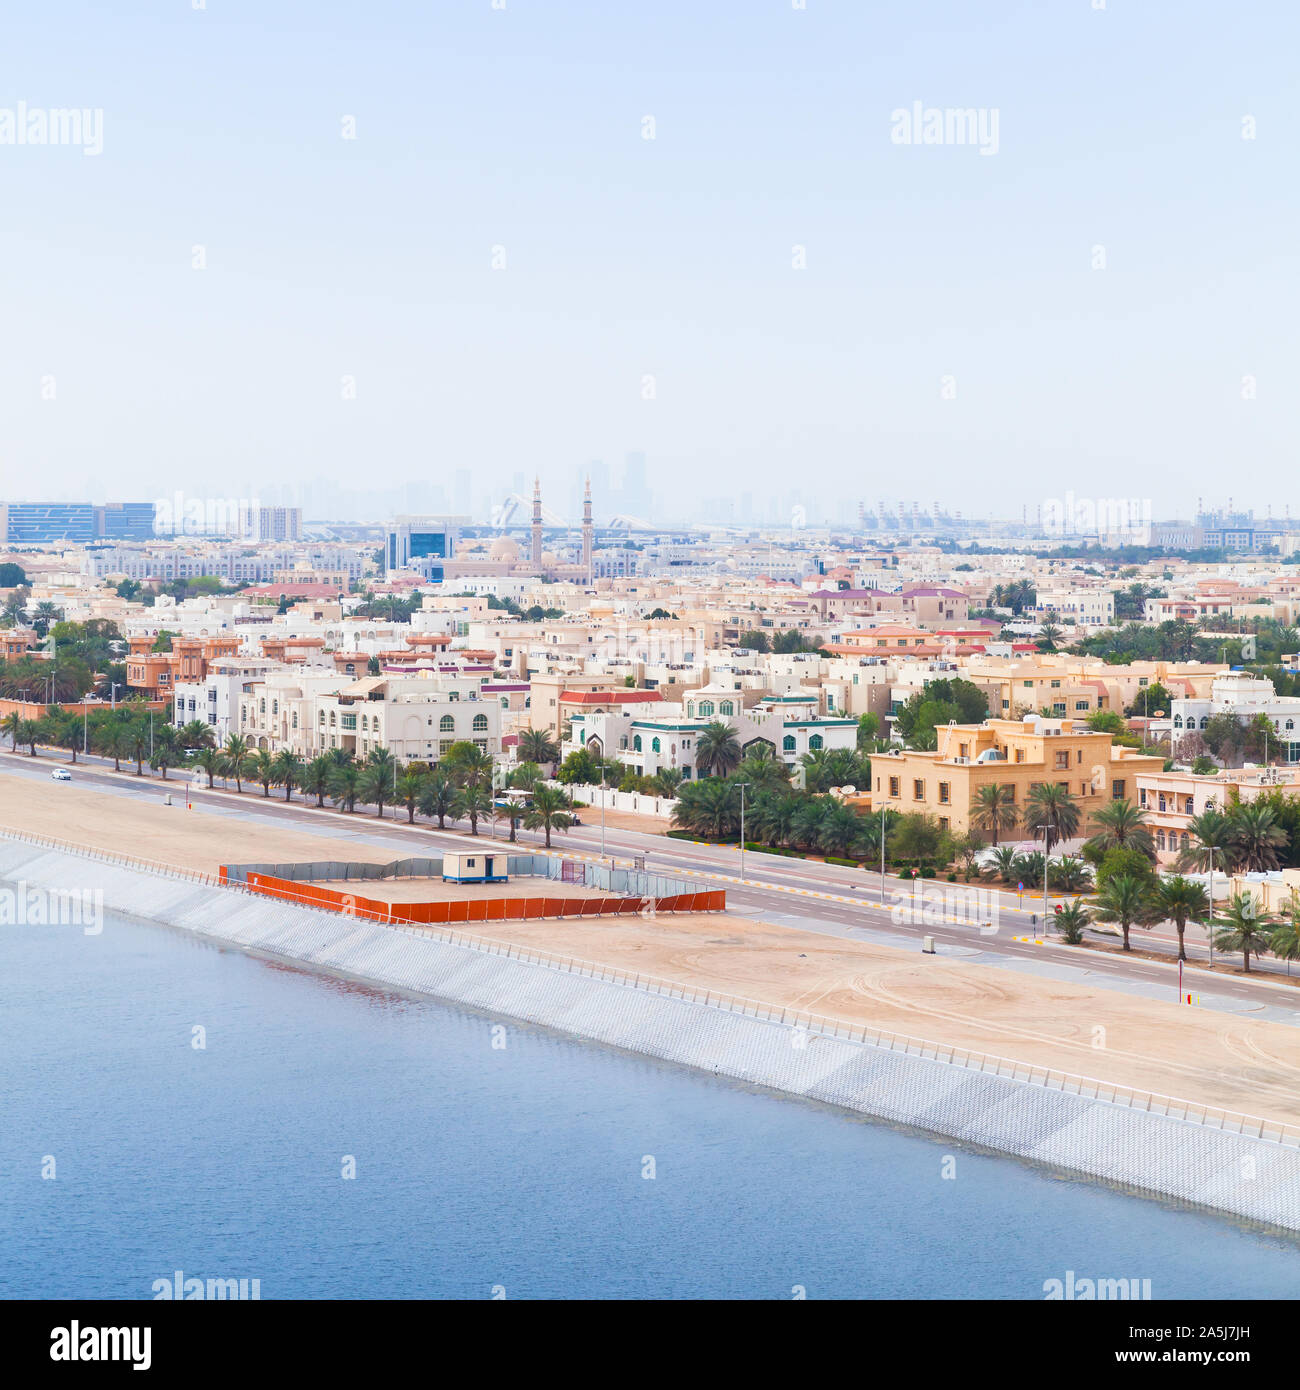 Abu Dhabi, aus der Vogelperspektive. Küsten Stadtbild mit traditionellen Wohn häuser, Quadrat Foto Stockfoto